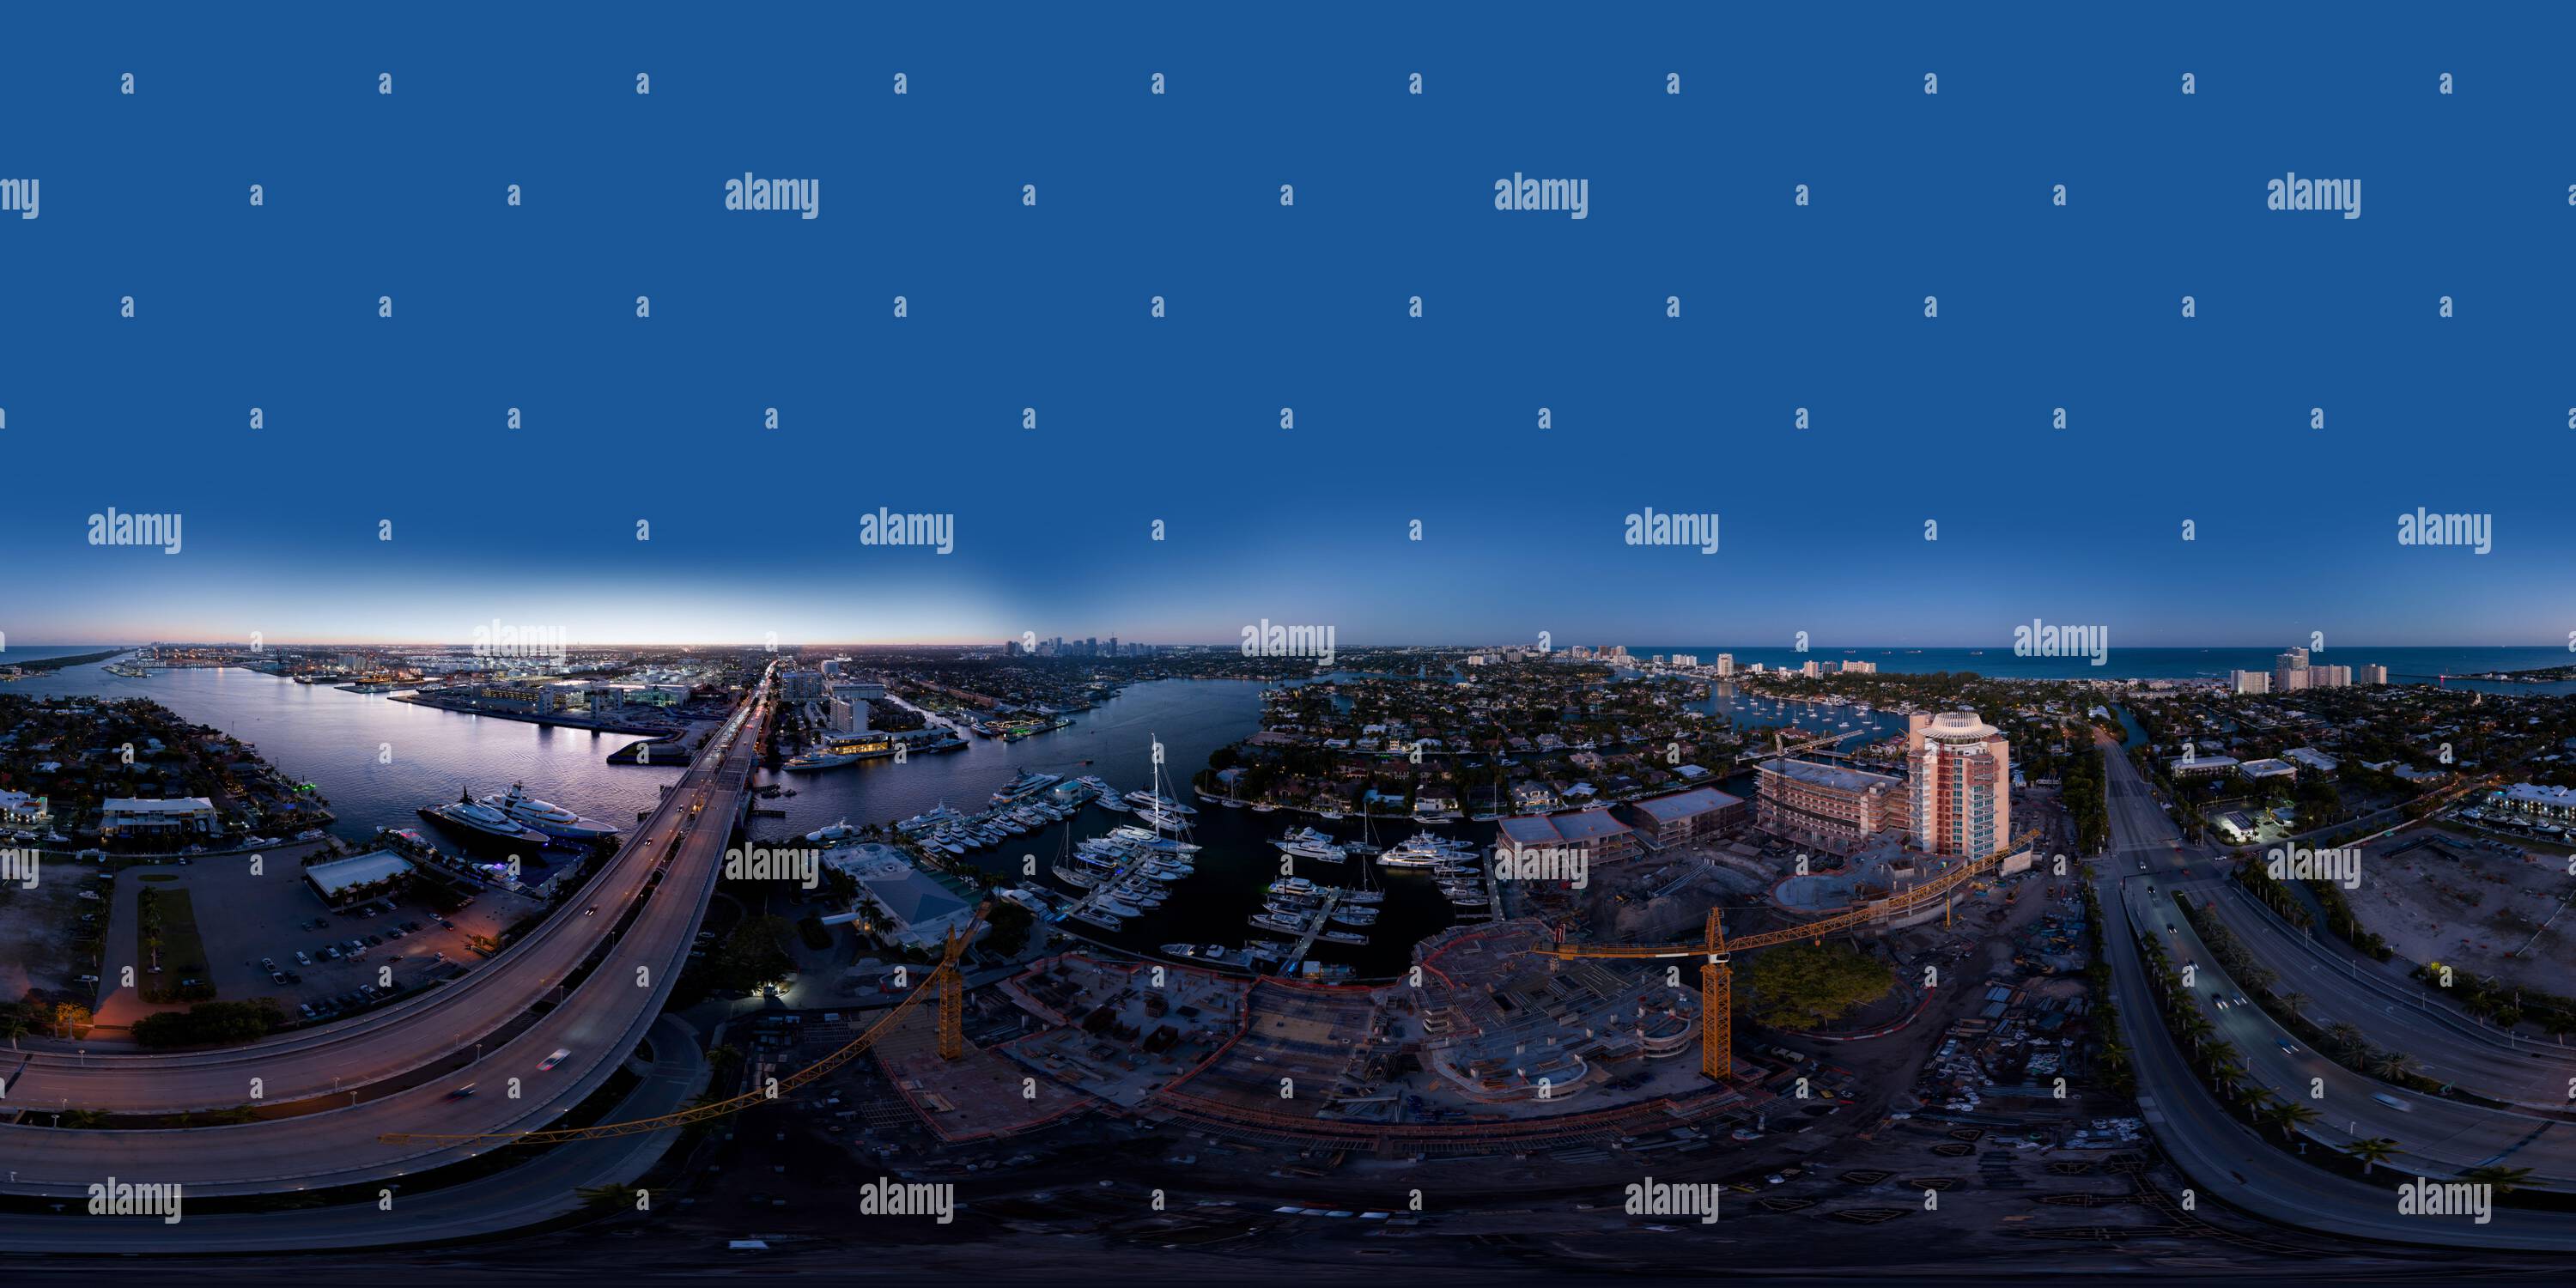 Vue panoramique à 360° de Photographie aérienne de nuit équirectangulaire 360 Broward County sites de construction de fort Lauderdale